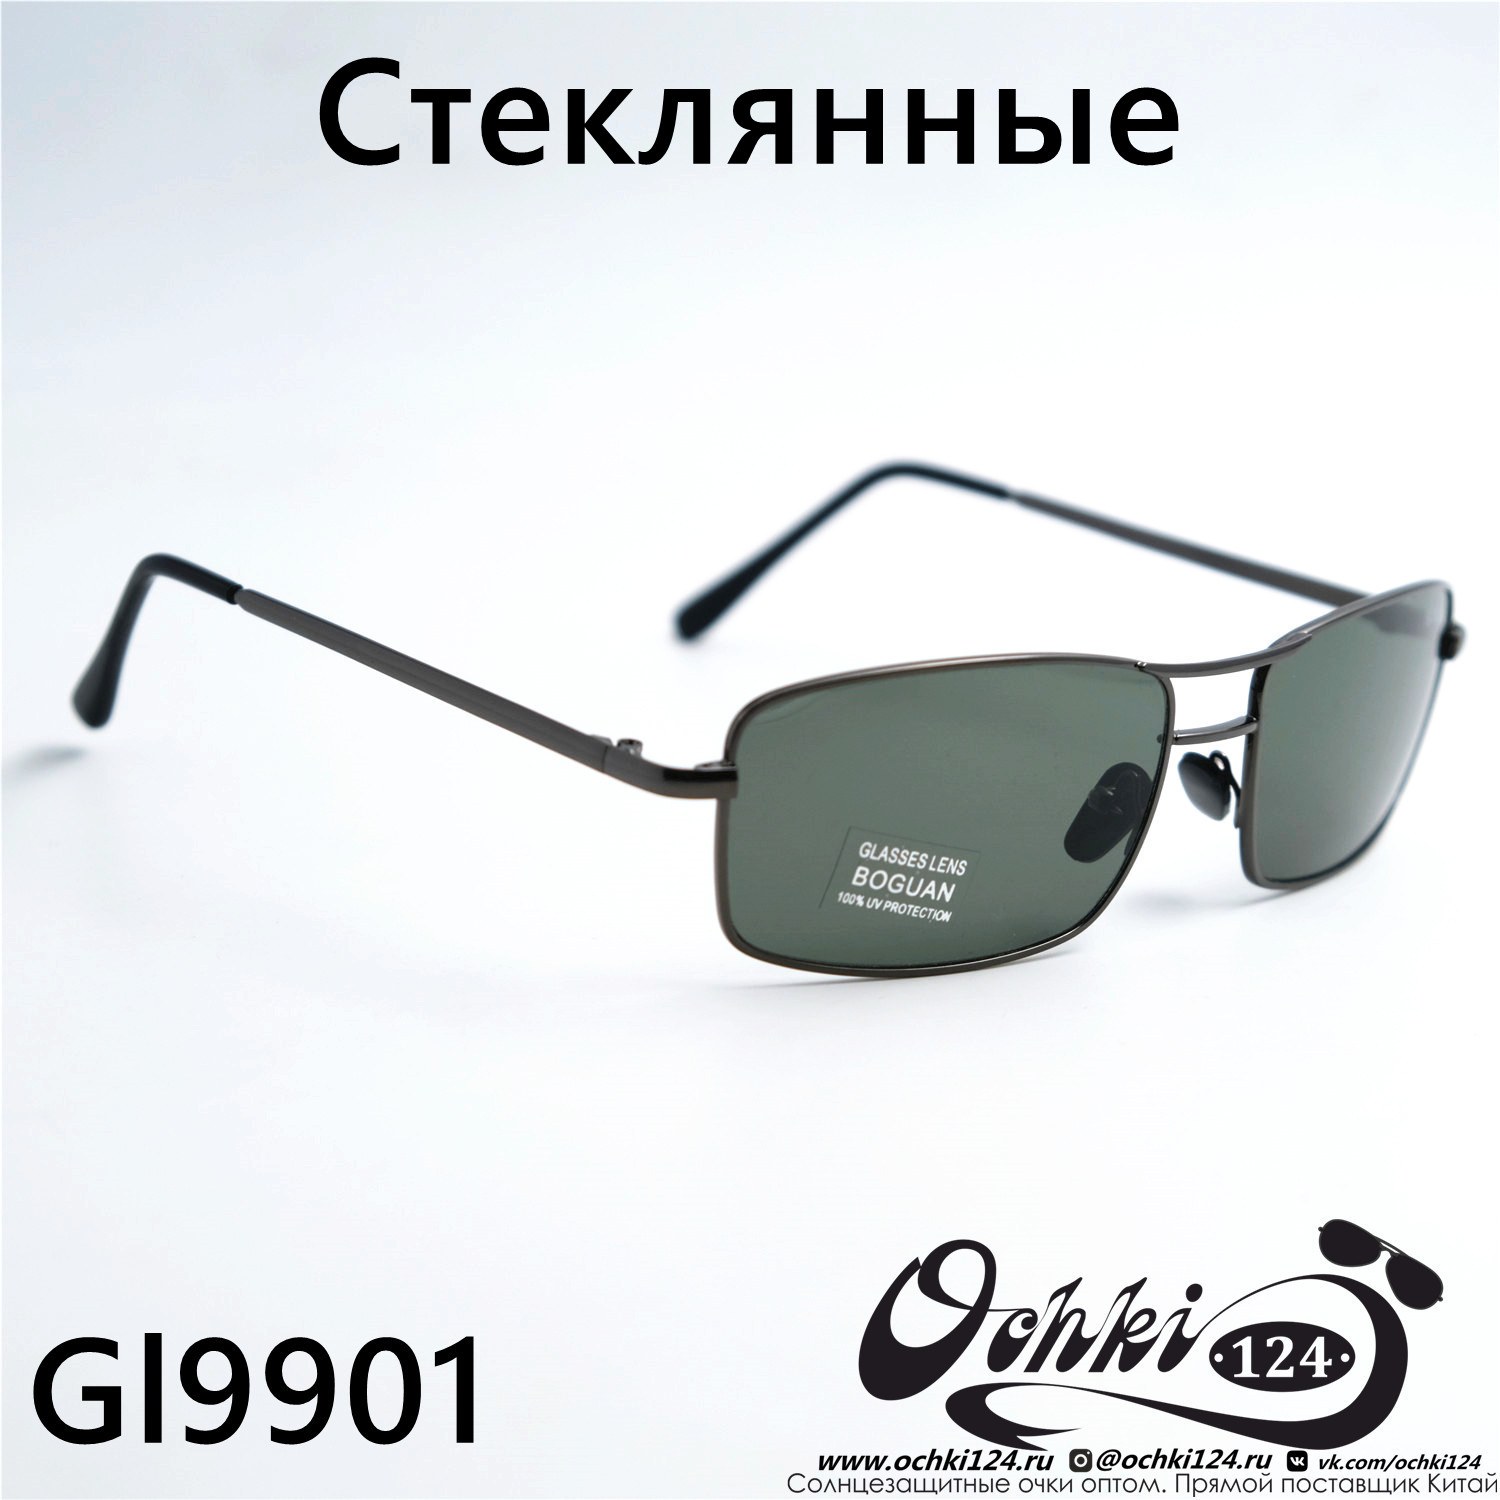  Солнцезащитные очки картинка 2023 Мужские Квадратные Boguan 9901-C3 